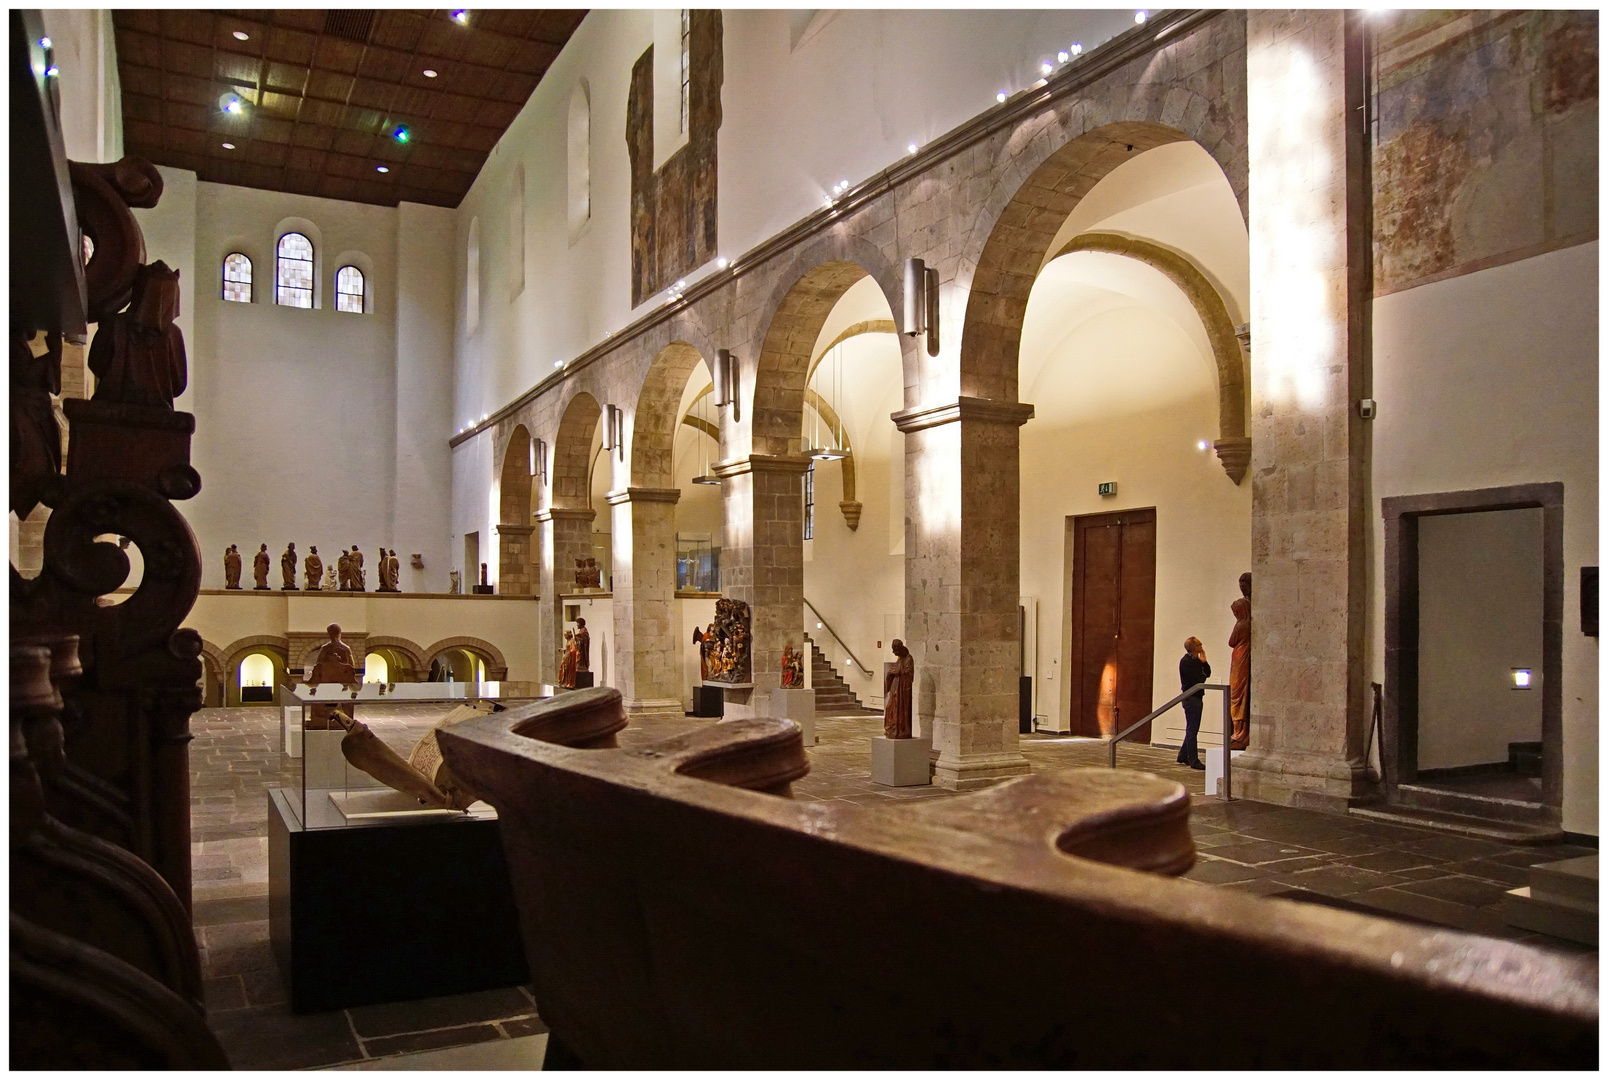 St. Cäcilien und das Museum Schnütgen